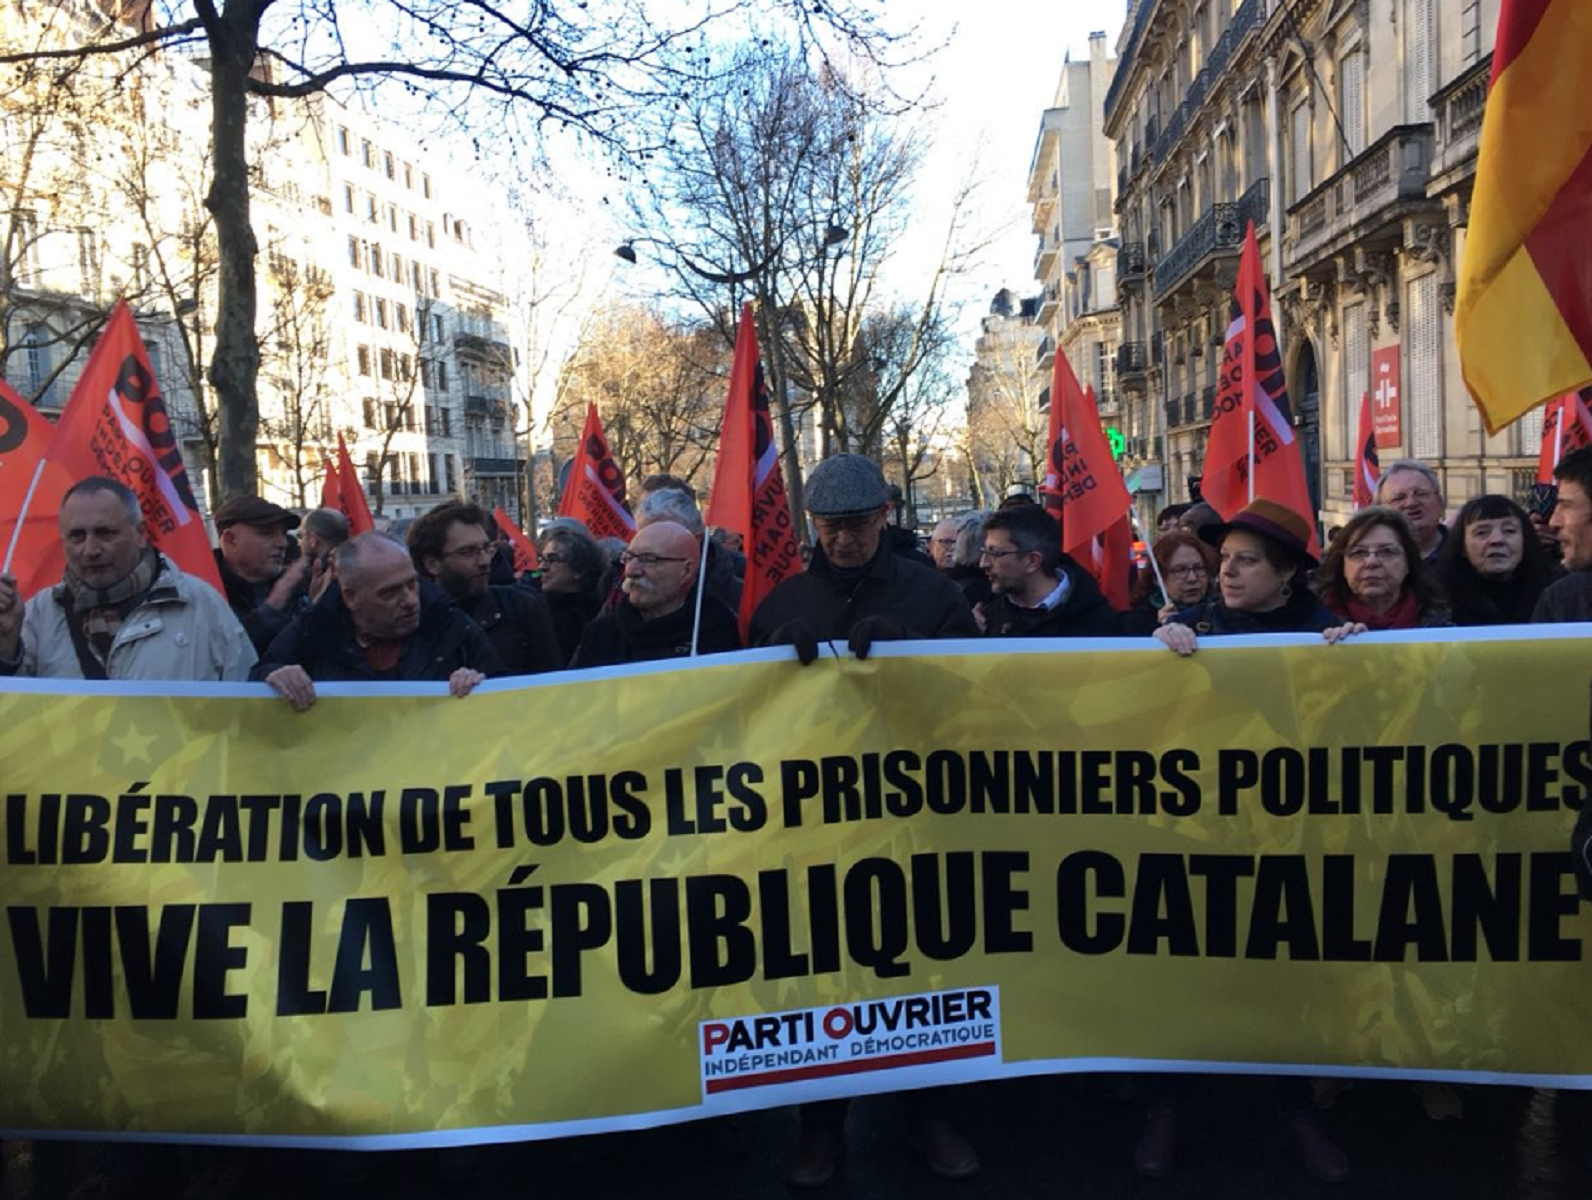 Recogen más de 1.000 firmas en menos de 24 horas en Francia para liberar a los presos